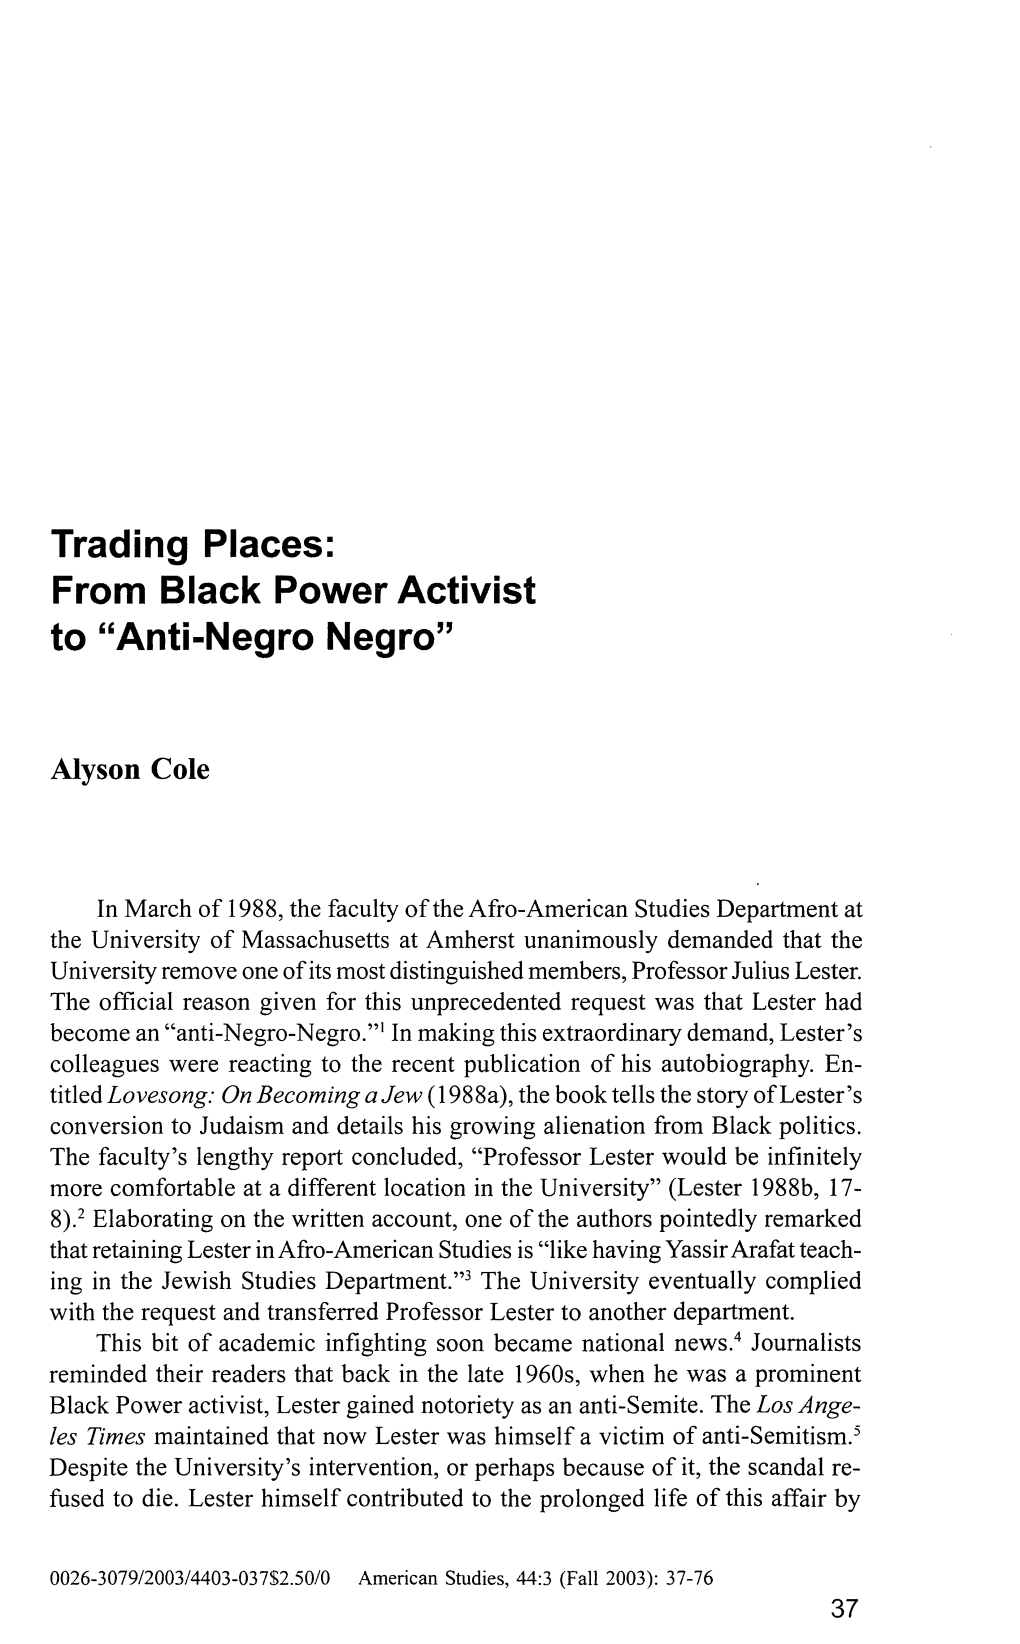 From Black Power Activist to "Anti-Negro Negro"